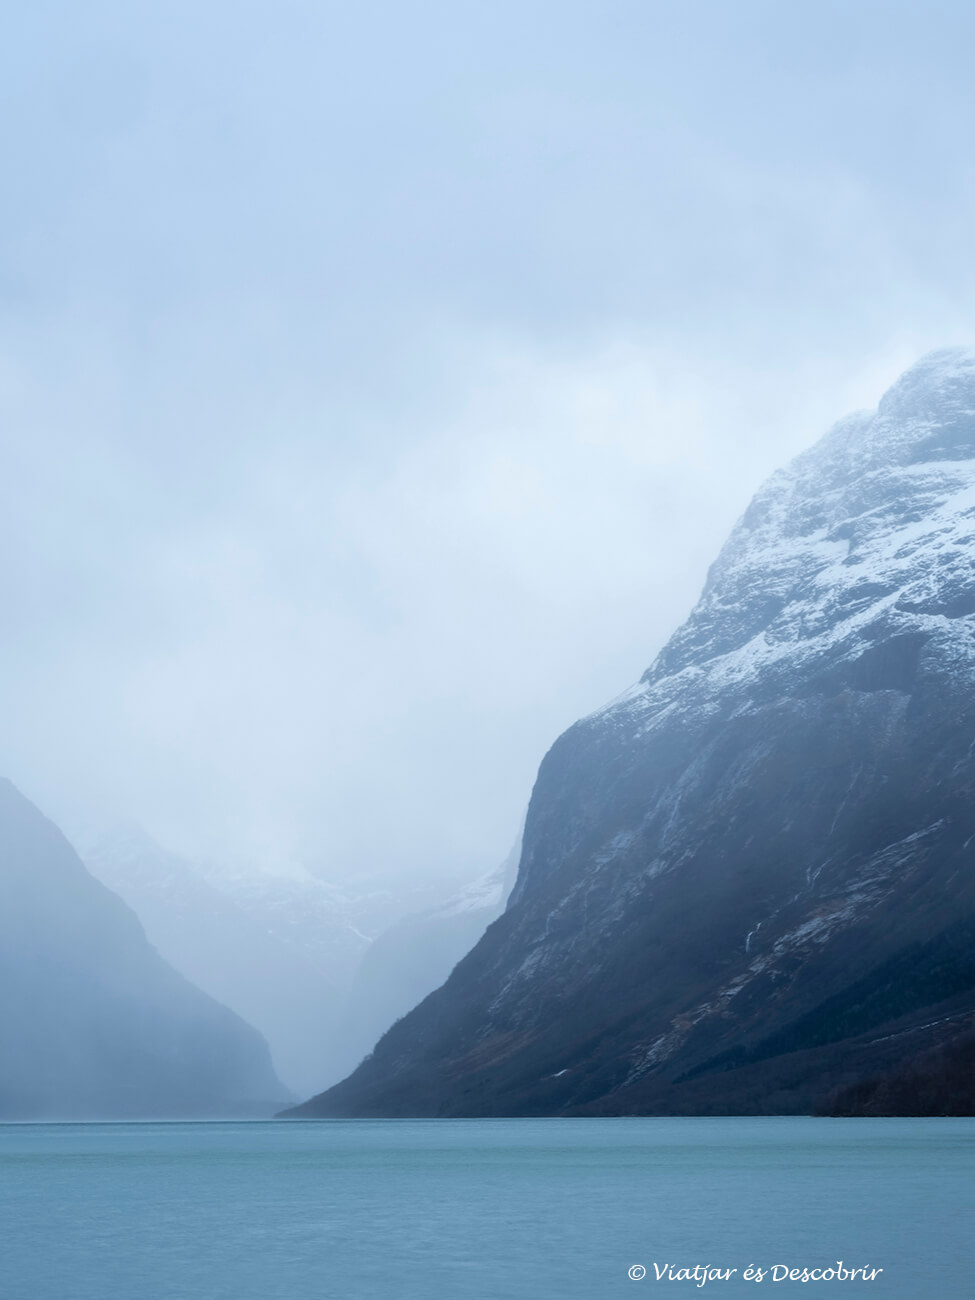 el agua azul del Lago de Loen y las montañas nevadas que lo rodean durante un día de mucho viento en los fiordos noruegos